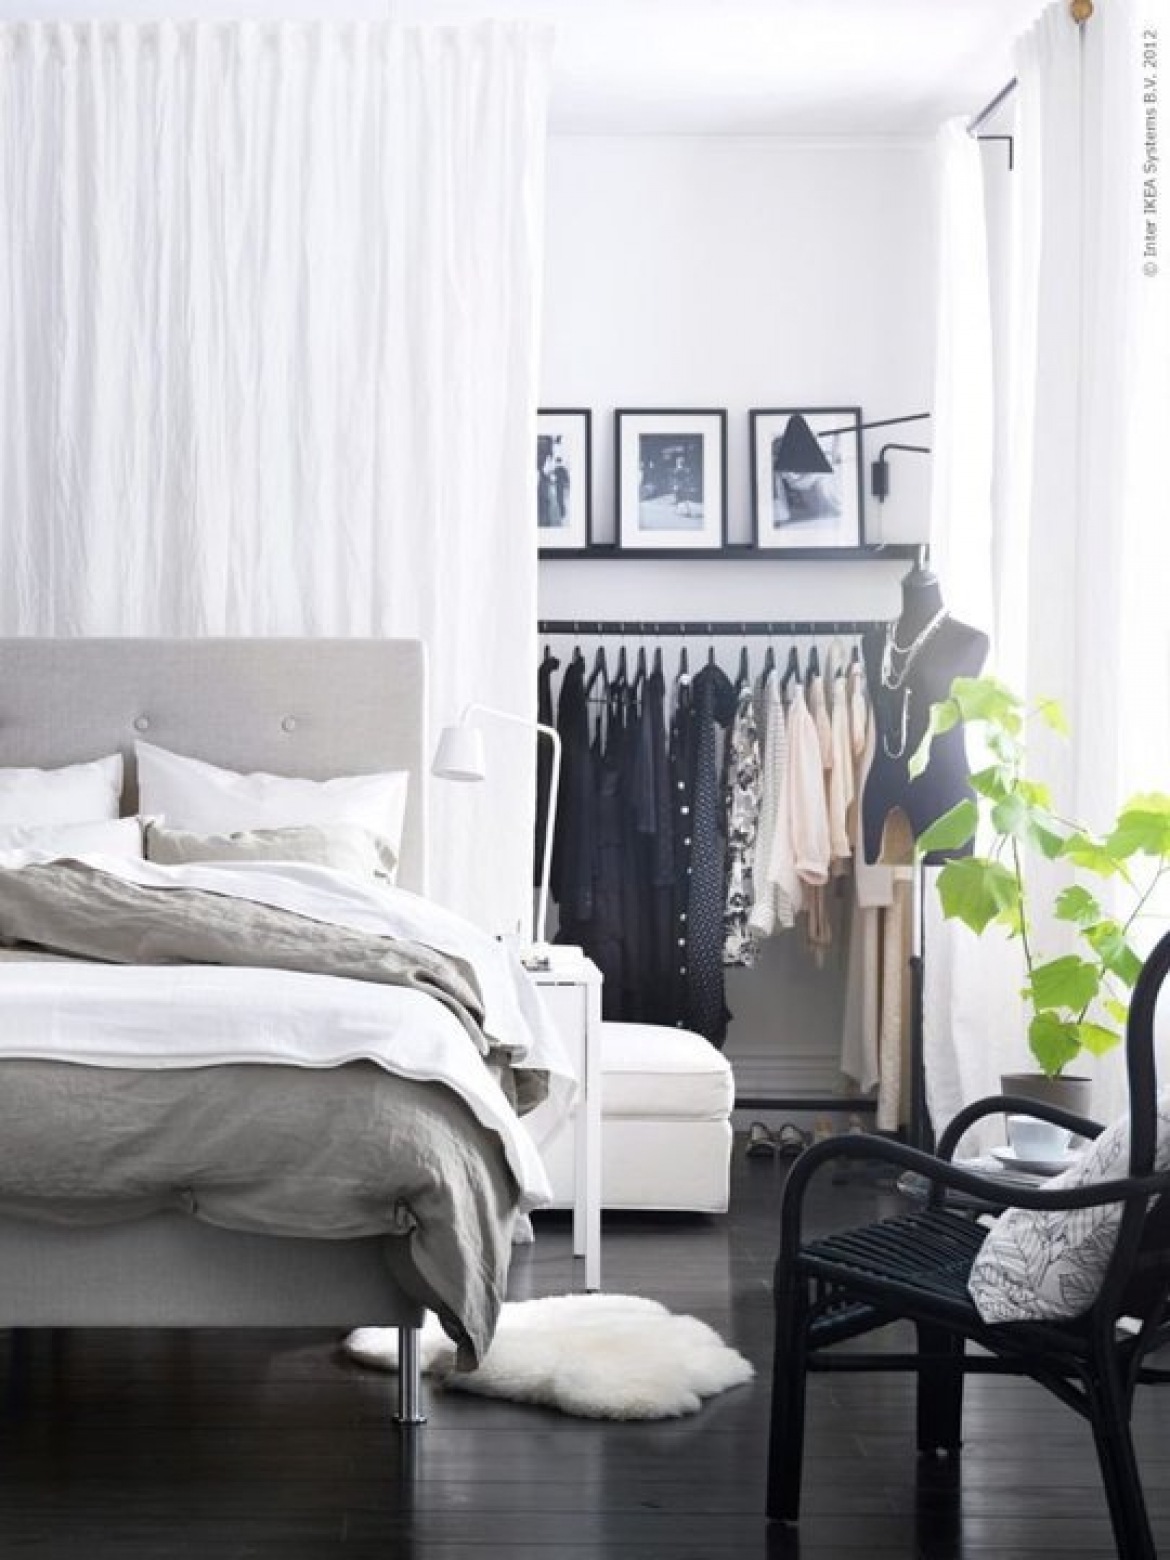 Jak przechowywać ubrania w mieszkaniu bez szafy? – LEMONIZE.ME (27673)